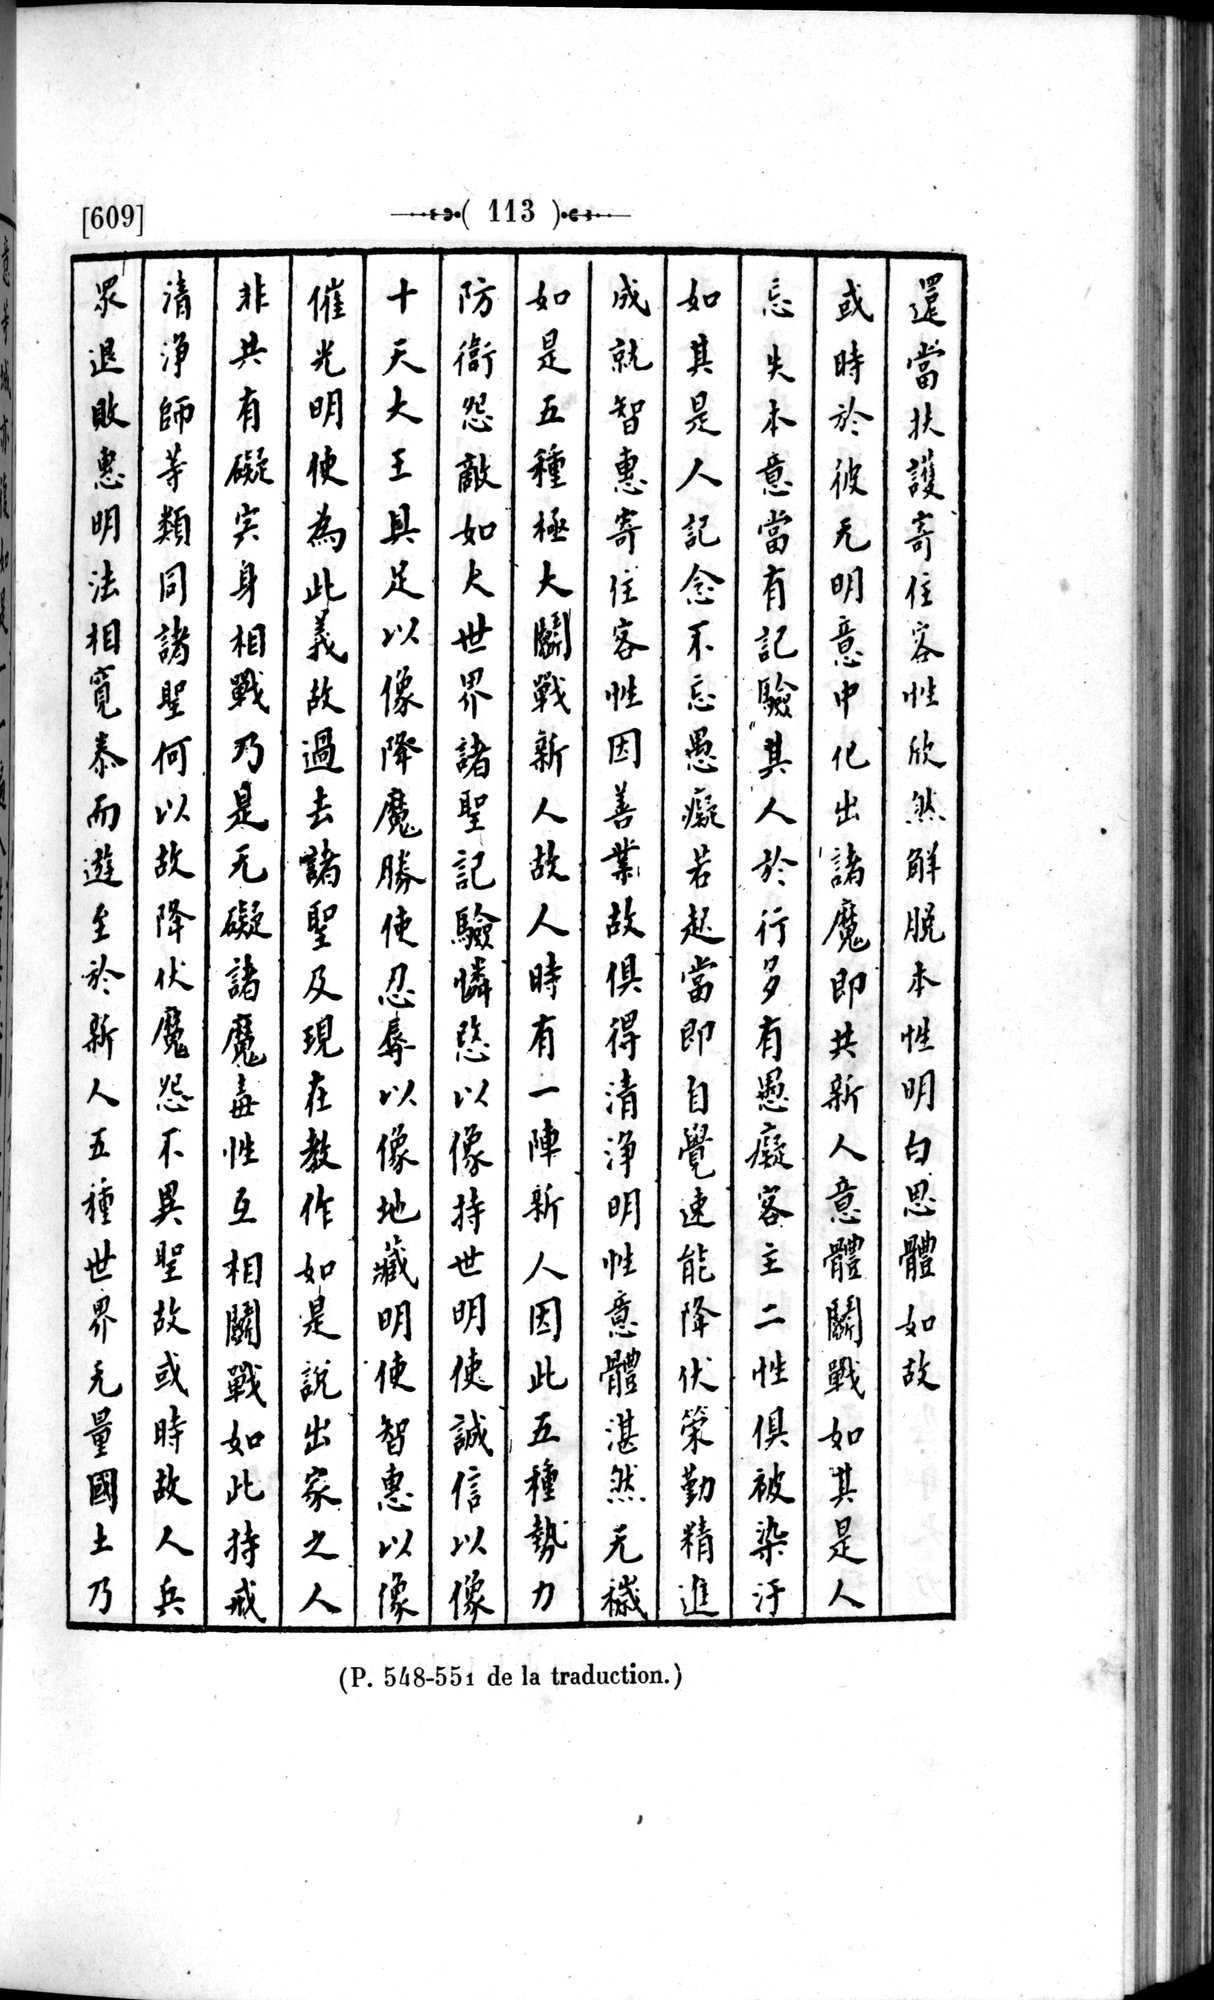 Un traité manichéen retrouvé en Chine : vol.1 / Page 123 (Grayscale High Resolution Image)